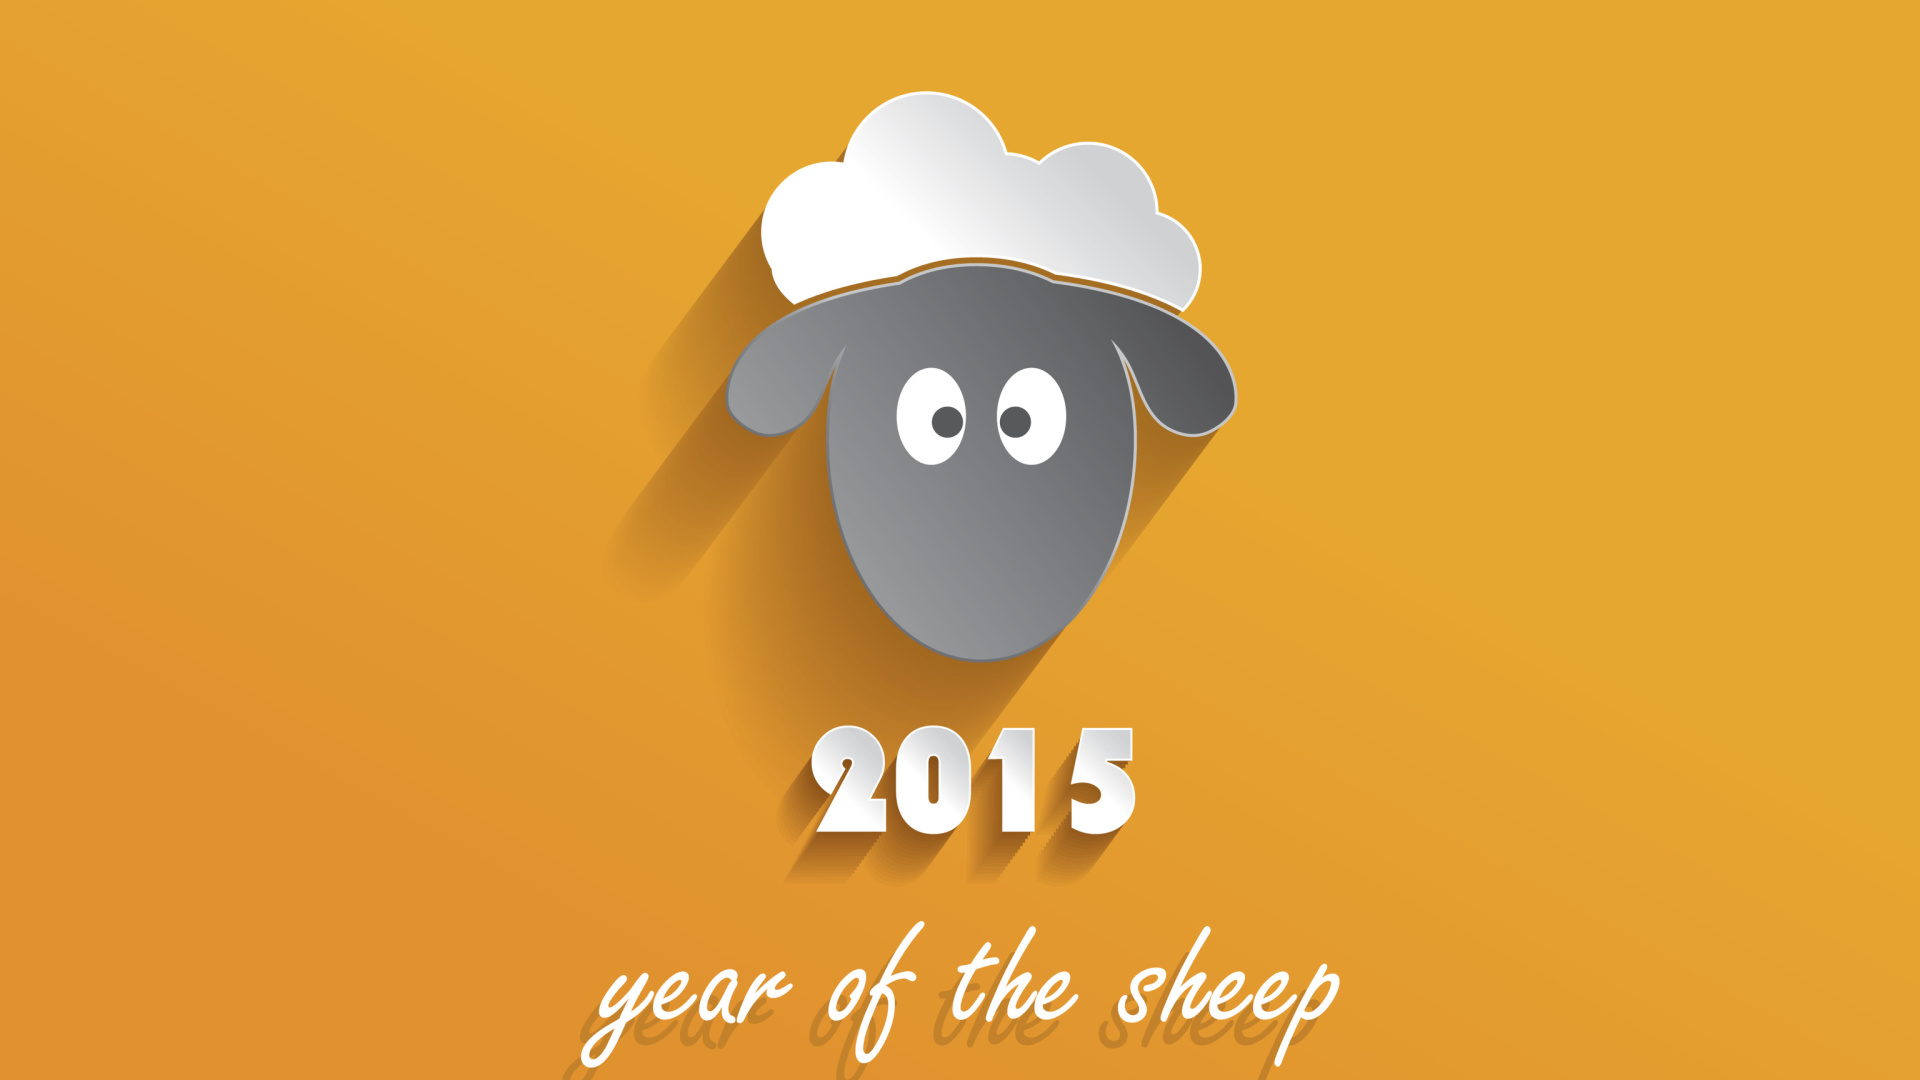 Обои Year of the Sheep 2015 1920x1080